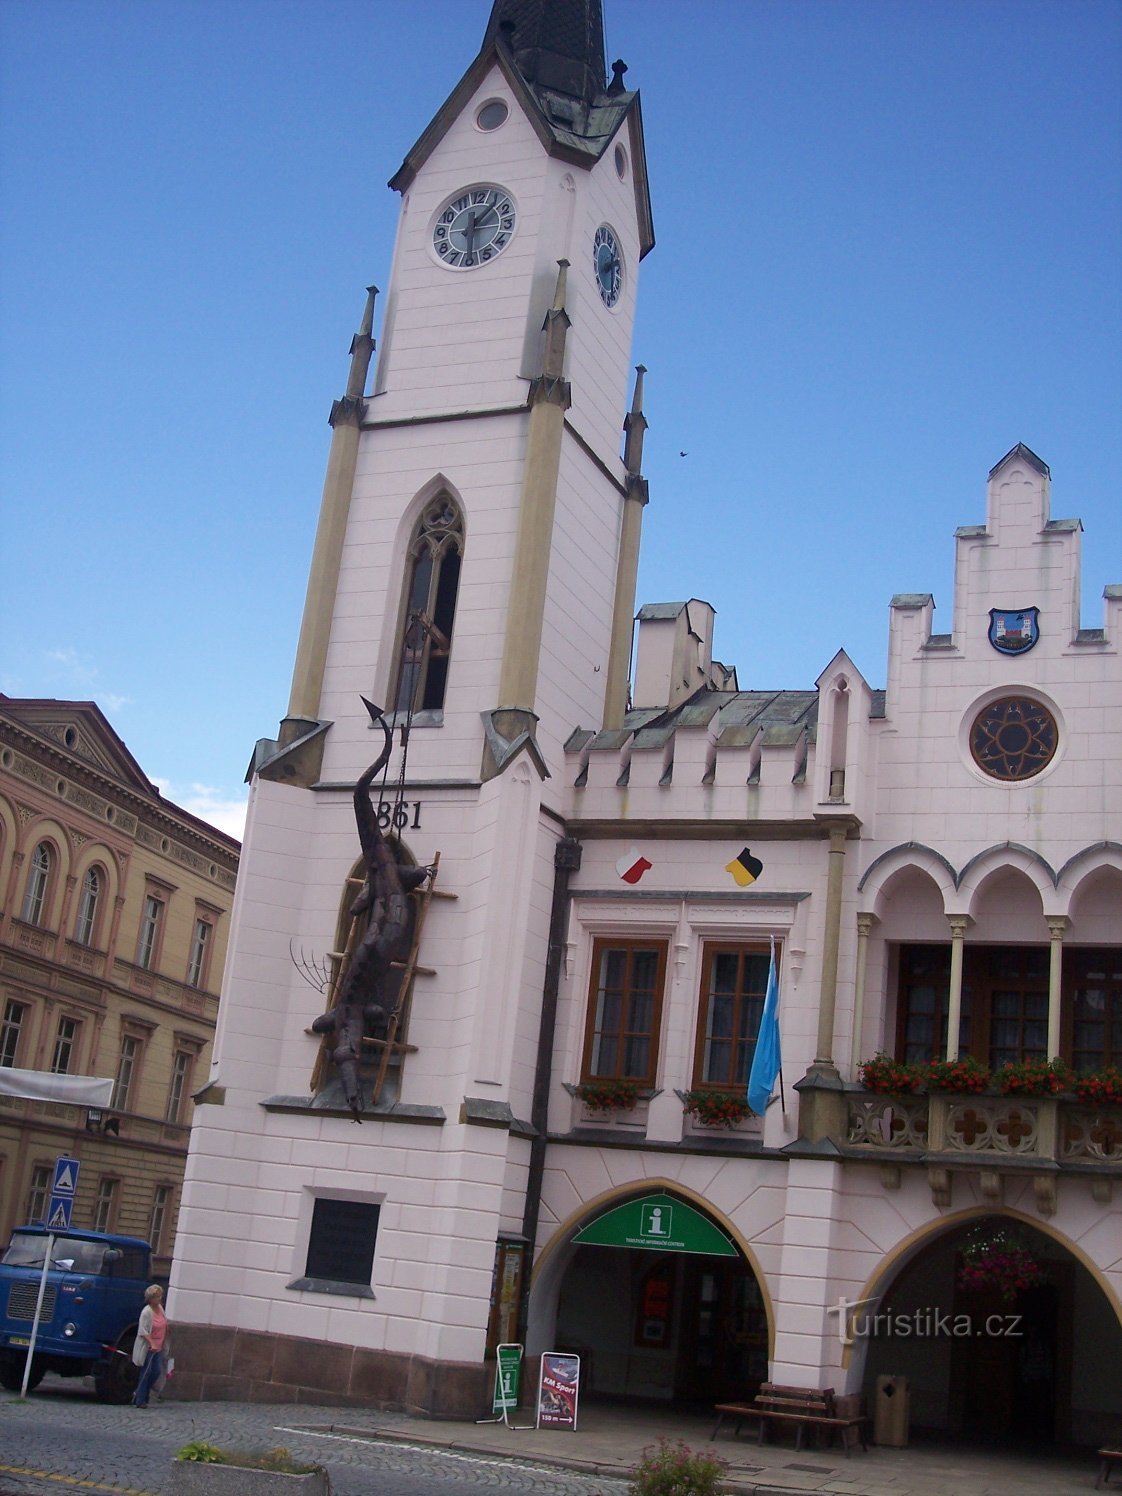 Tòa thị chính thời Phục hưng ban đầu từ cuối thế kỷ 16, được sửa đổi theo phong cách gothic giả vào năm 1861